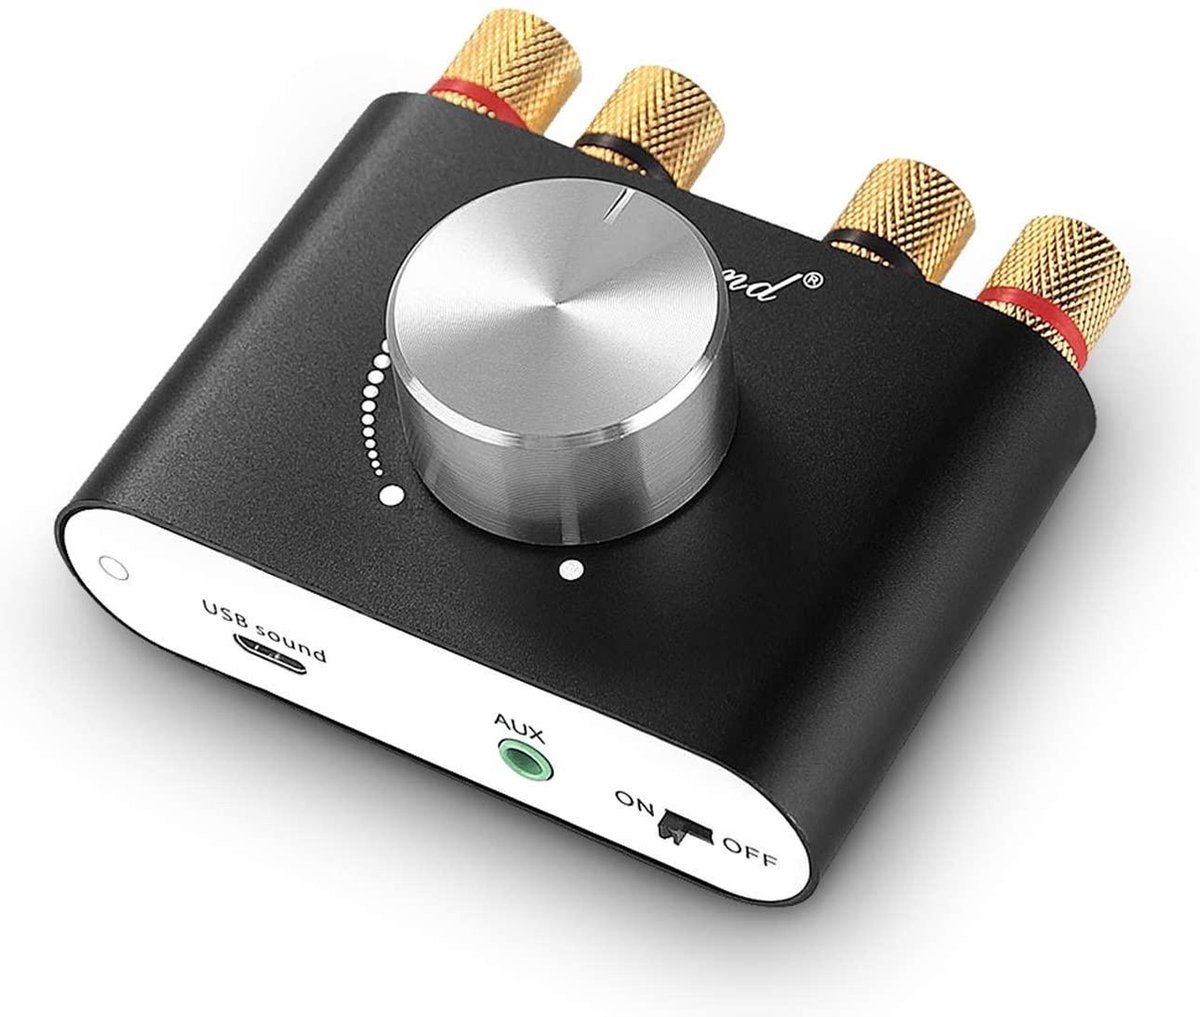 NÖRDIC SGM-198 Amplificateur Audio avec Bluetooth 5.0 - 2x40W - Avec USB,  entrée AUX 